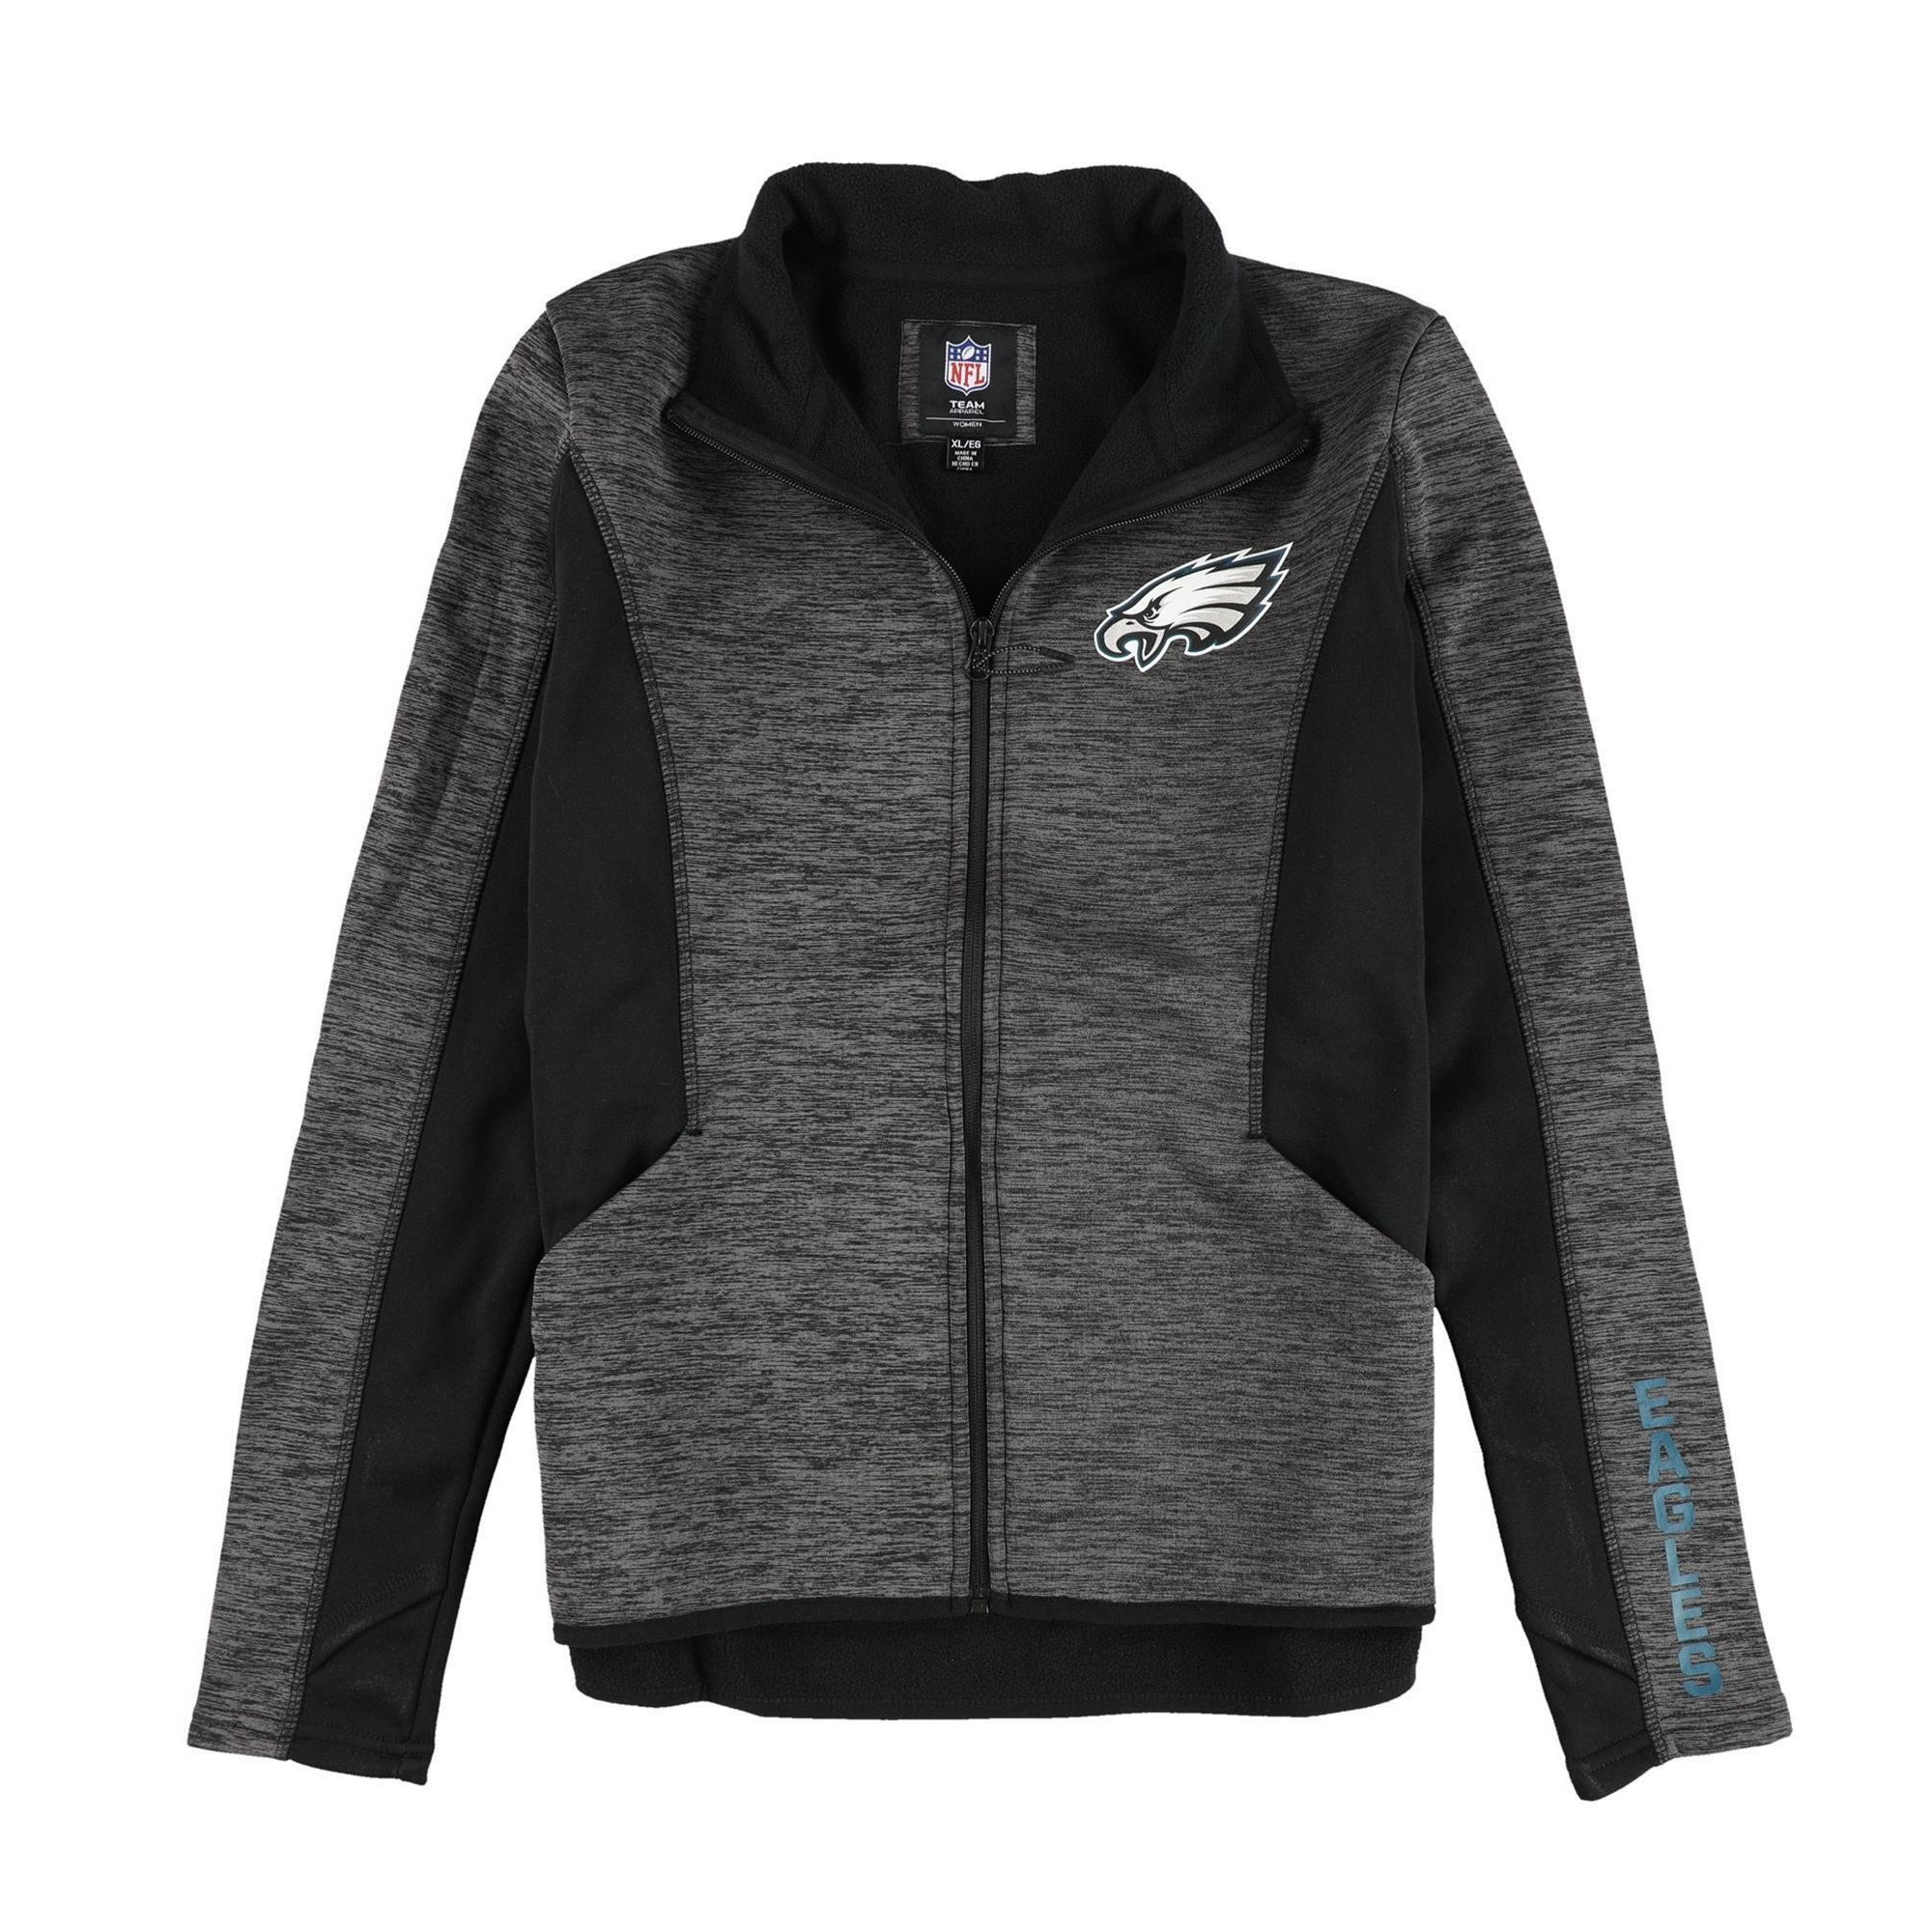 NFL Womens Philadelphia Eagles Track Jacket Sweatshirt, Style # NMI0B092-1 alternate image